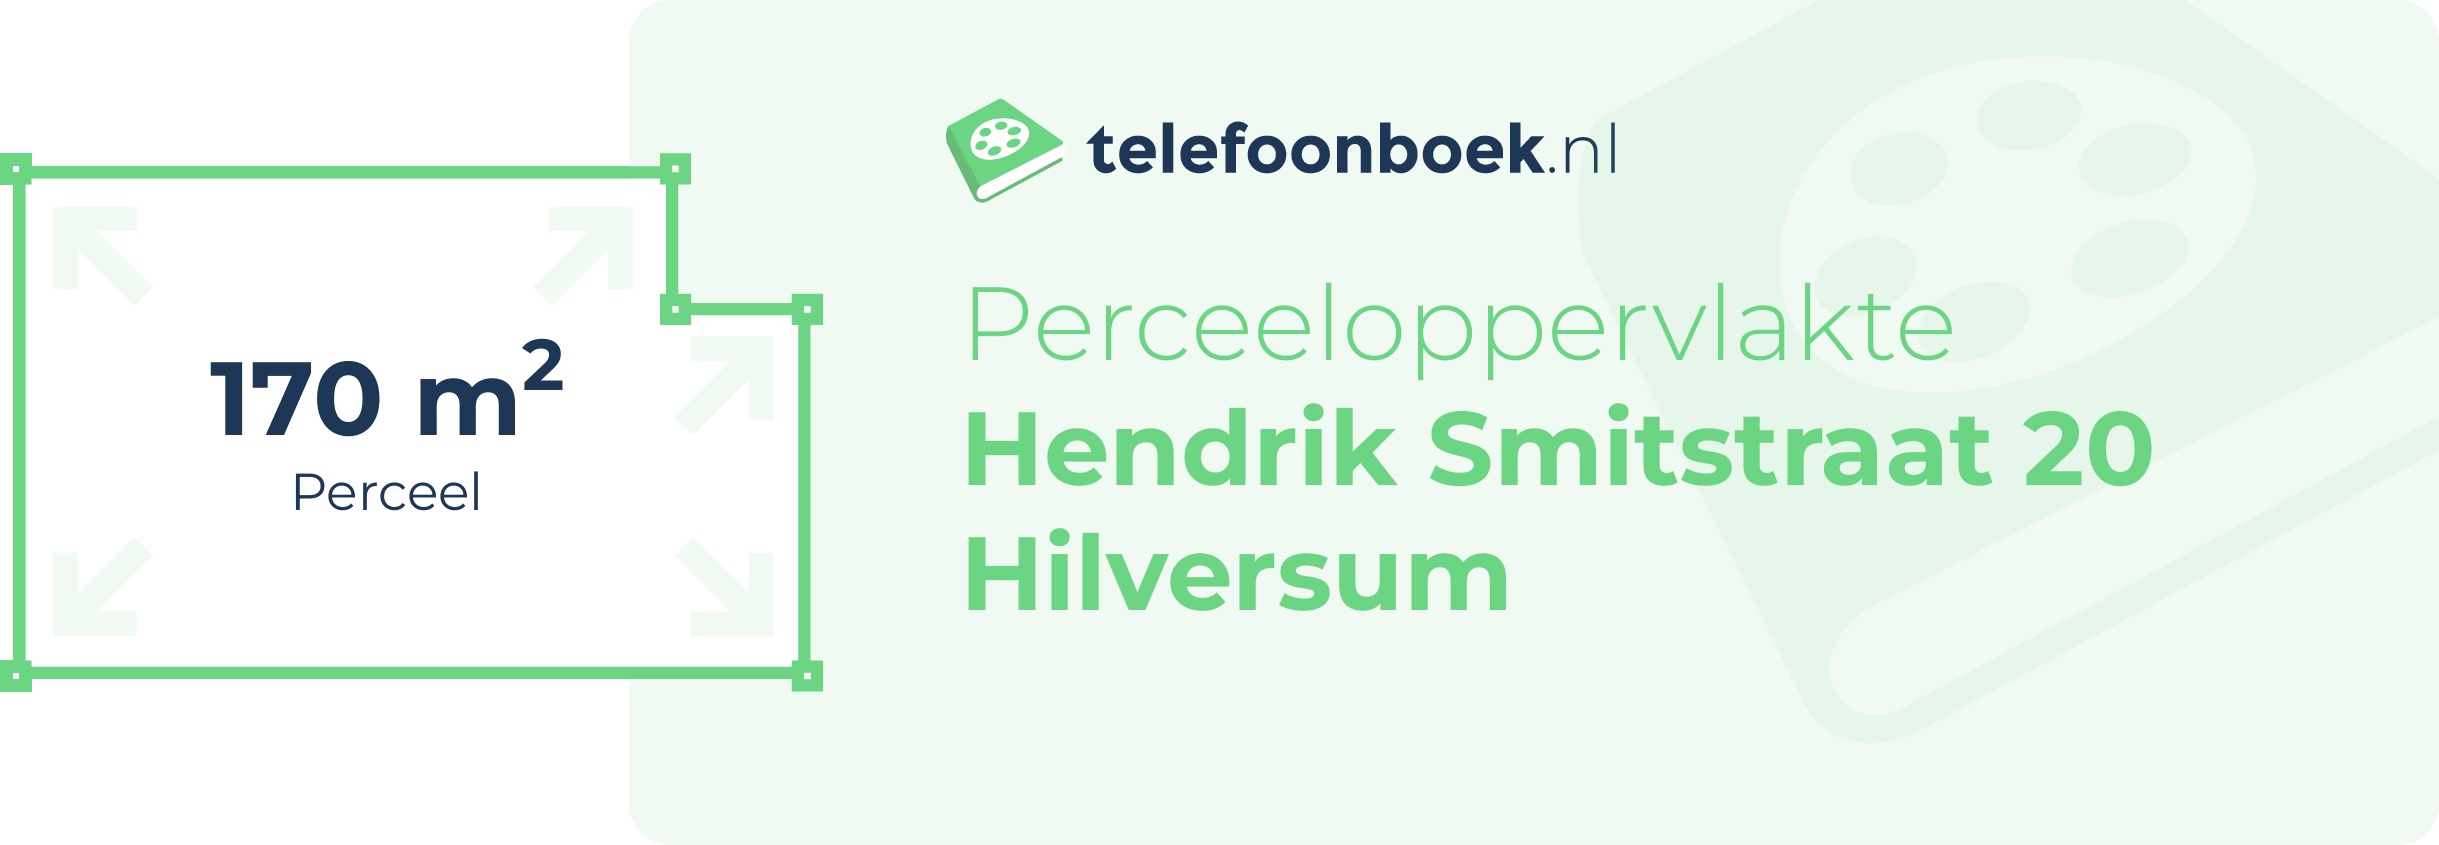 Perceeloppervlakte Hendrik Smitstraat 20 Hilversum